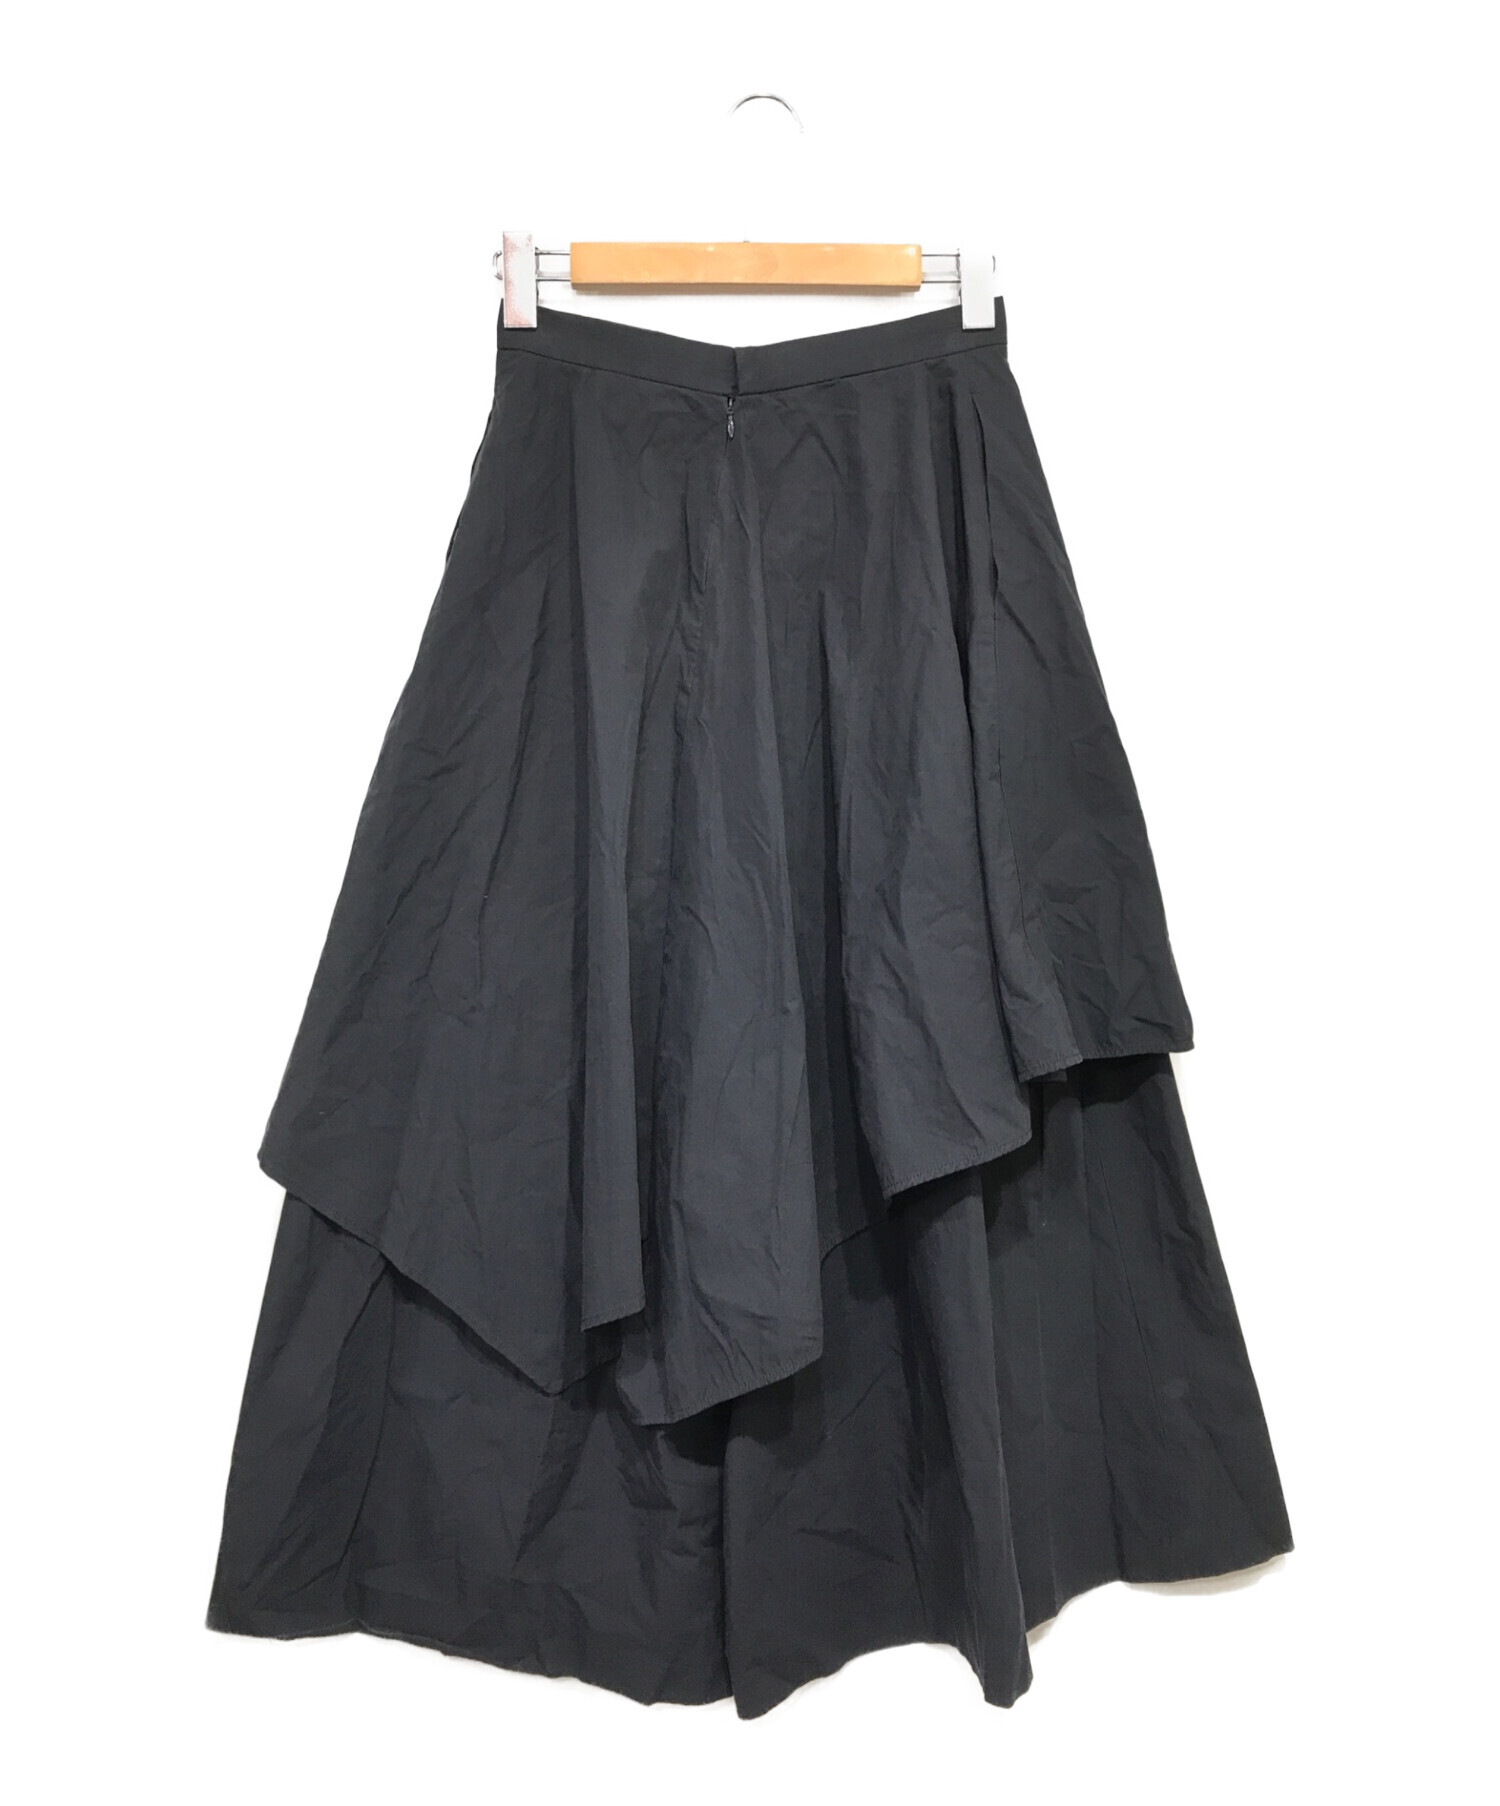 ENFOLD (エンフォルド) ランダムフレア スカートパンツ ネイビー サイズ:38